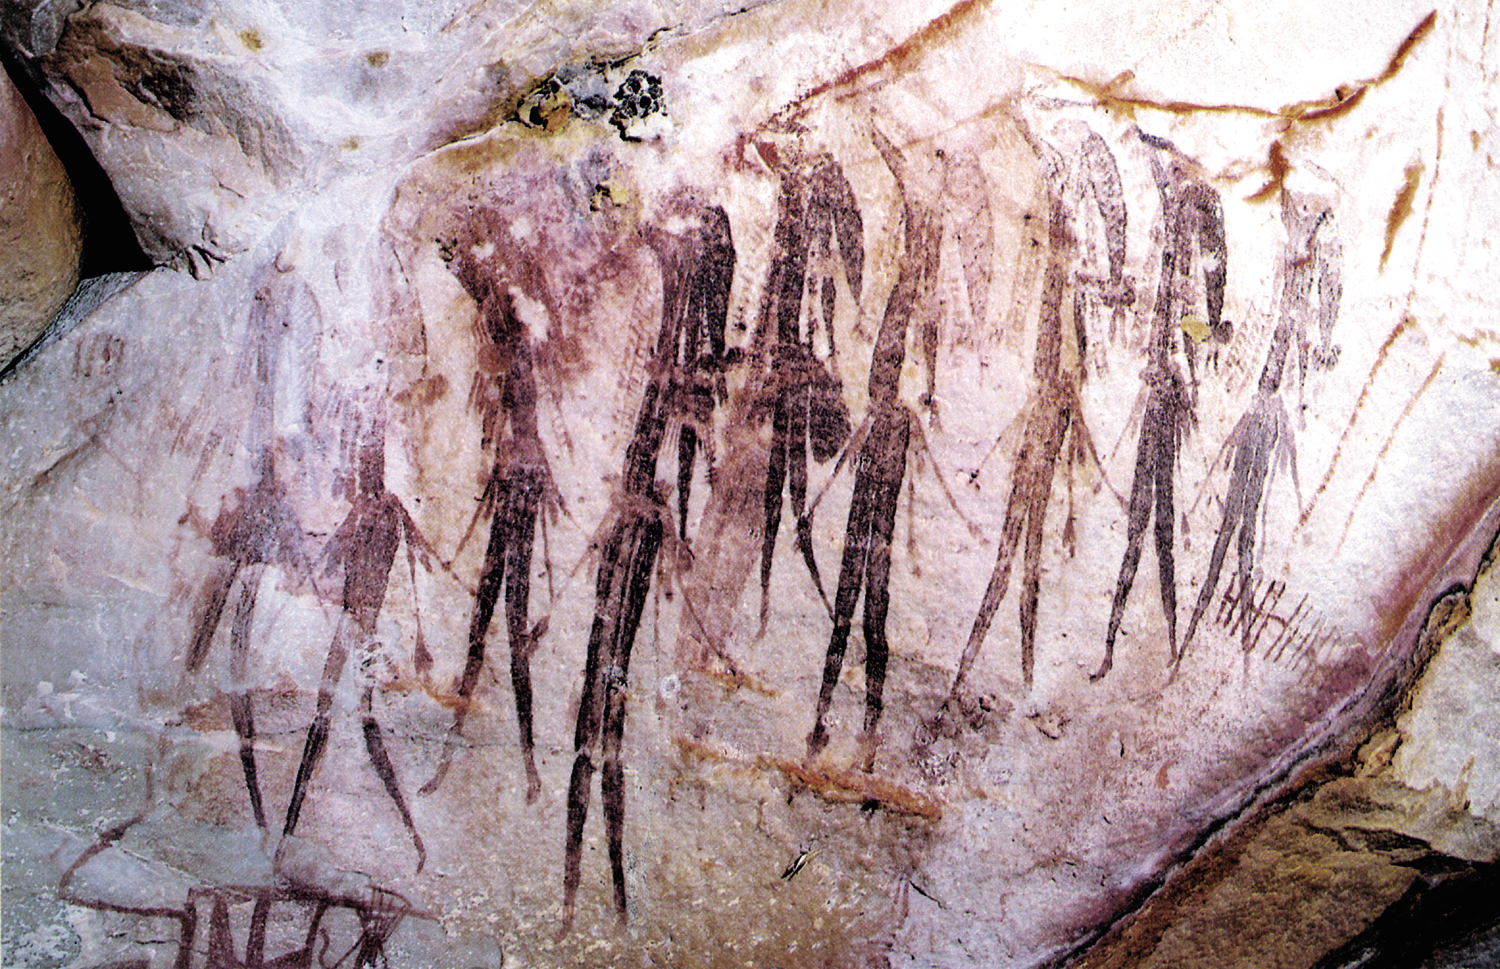 Indigenous rock art Australia gwion gwion Kimberley